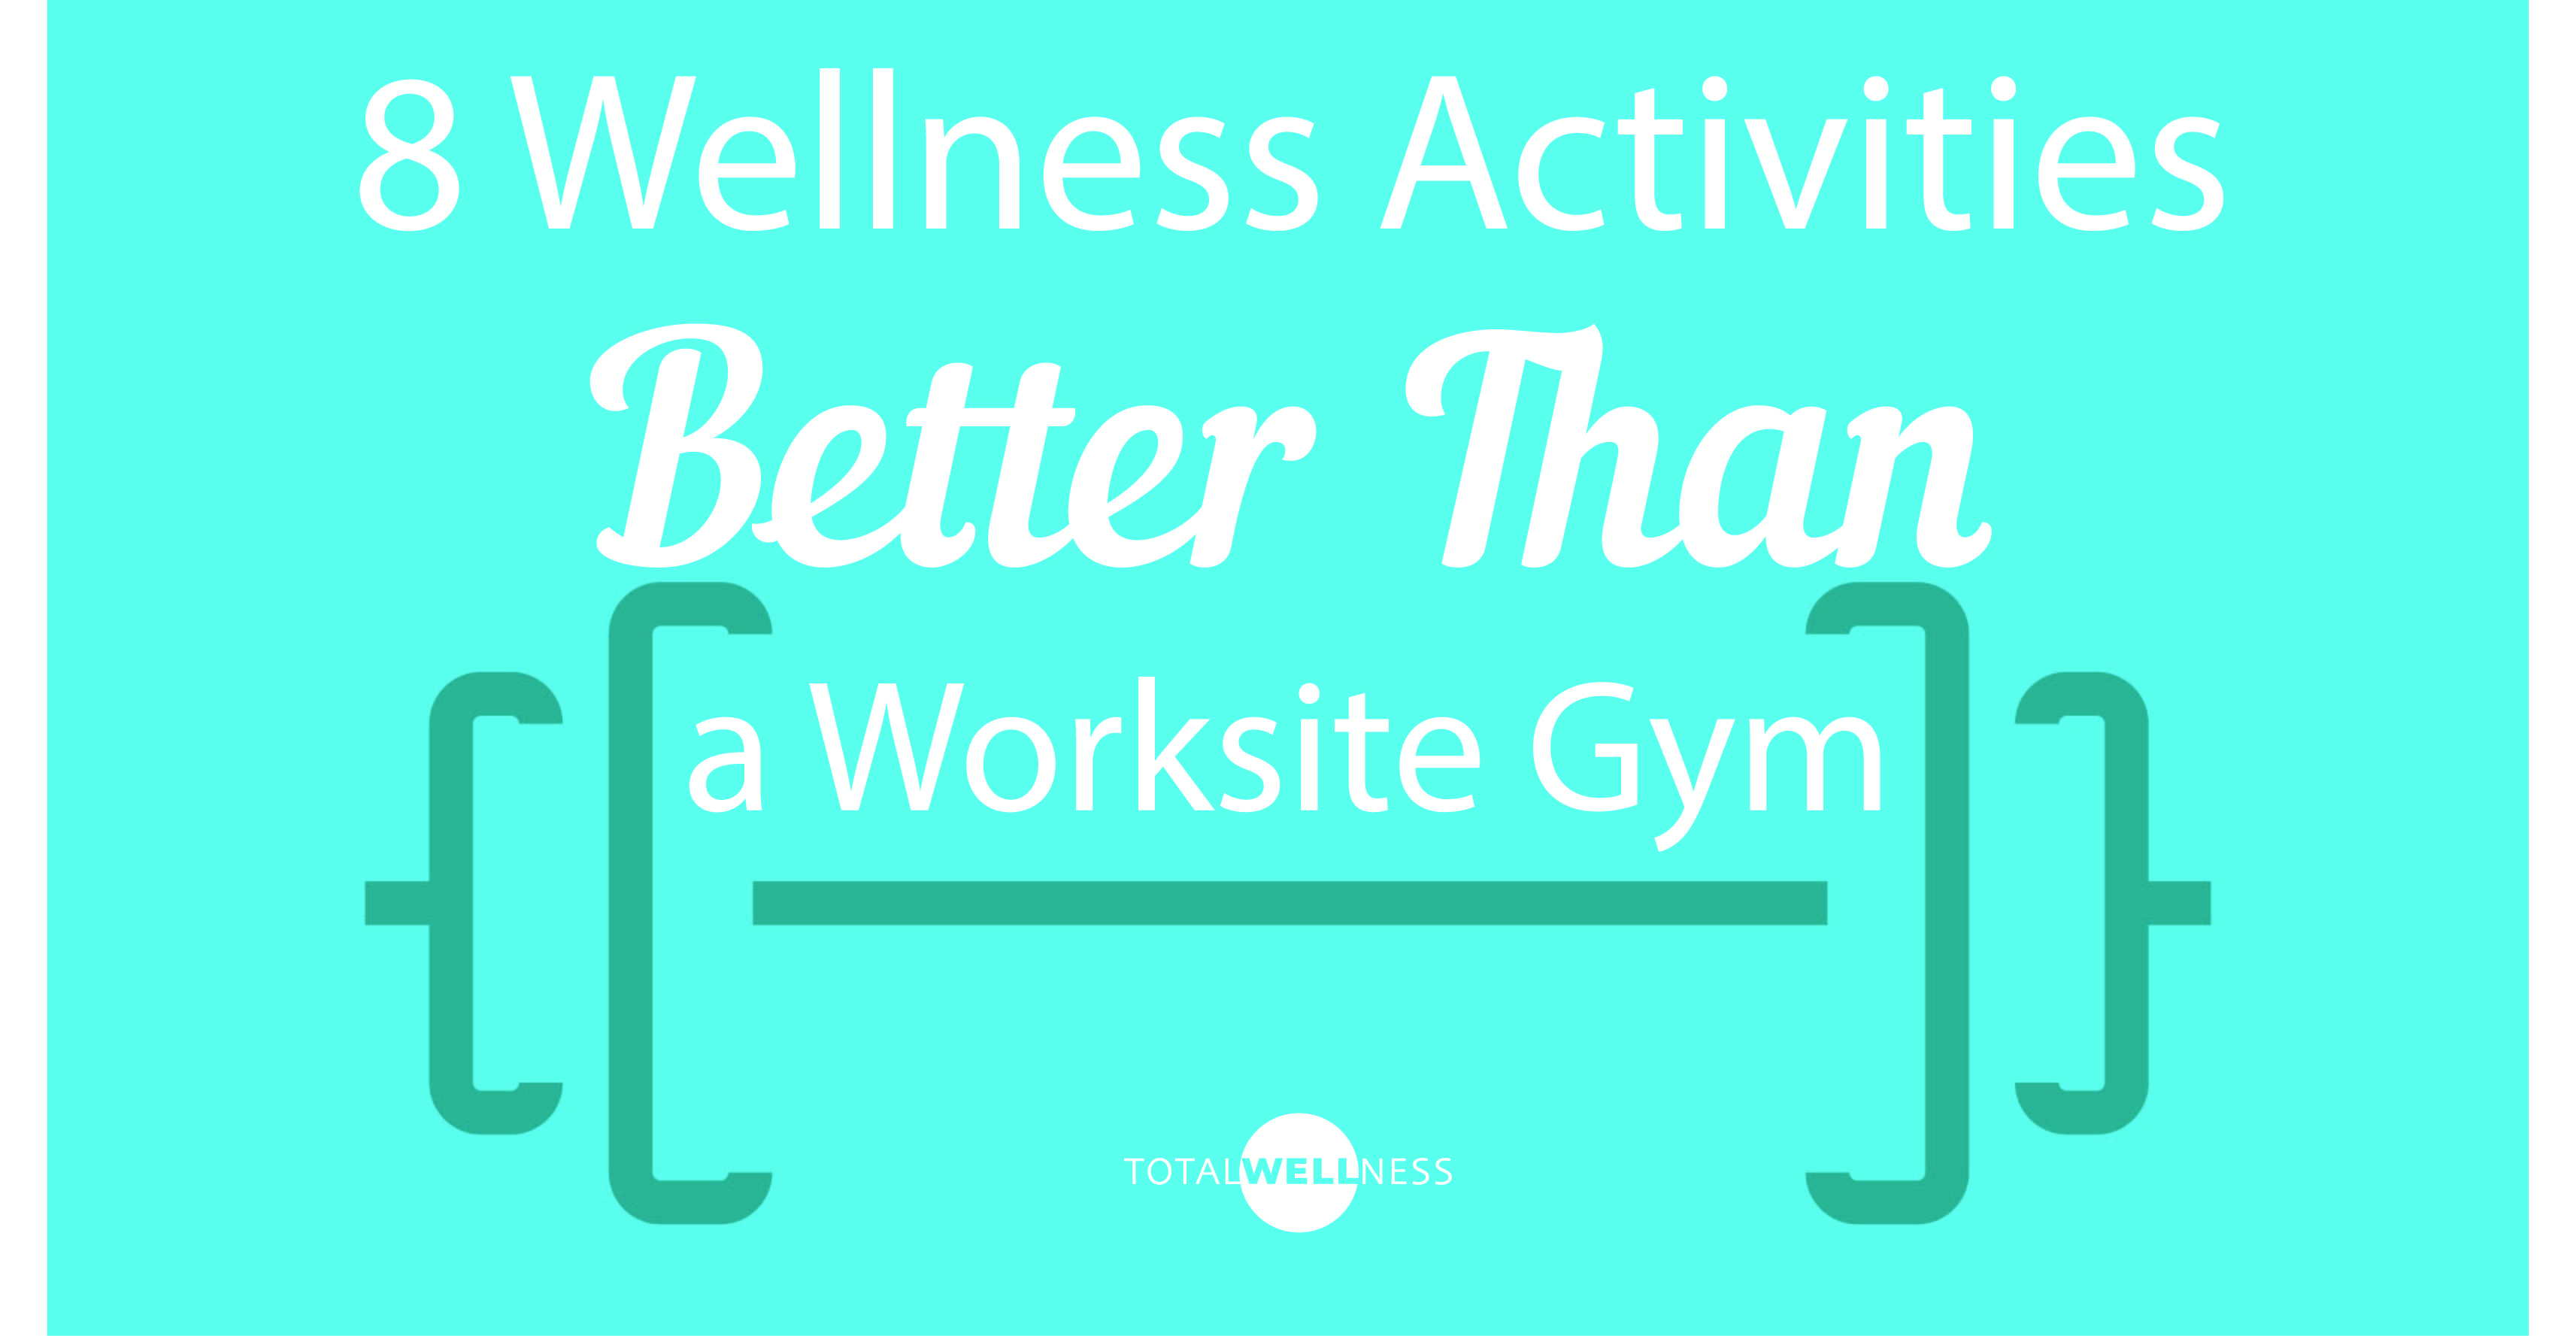 Employee Wellness Blog, TotalWellness